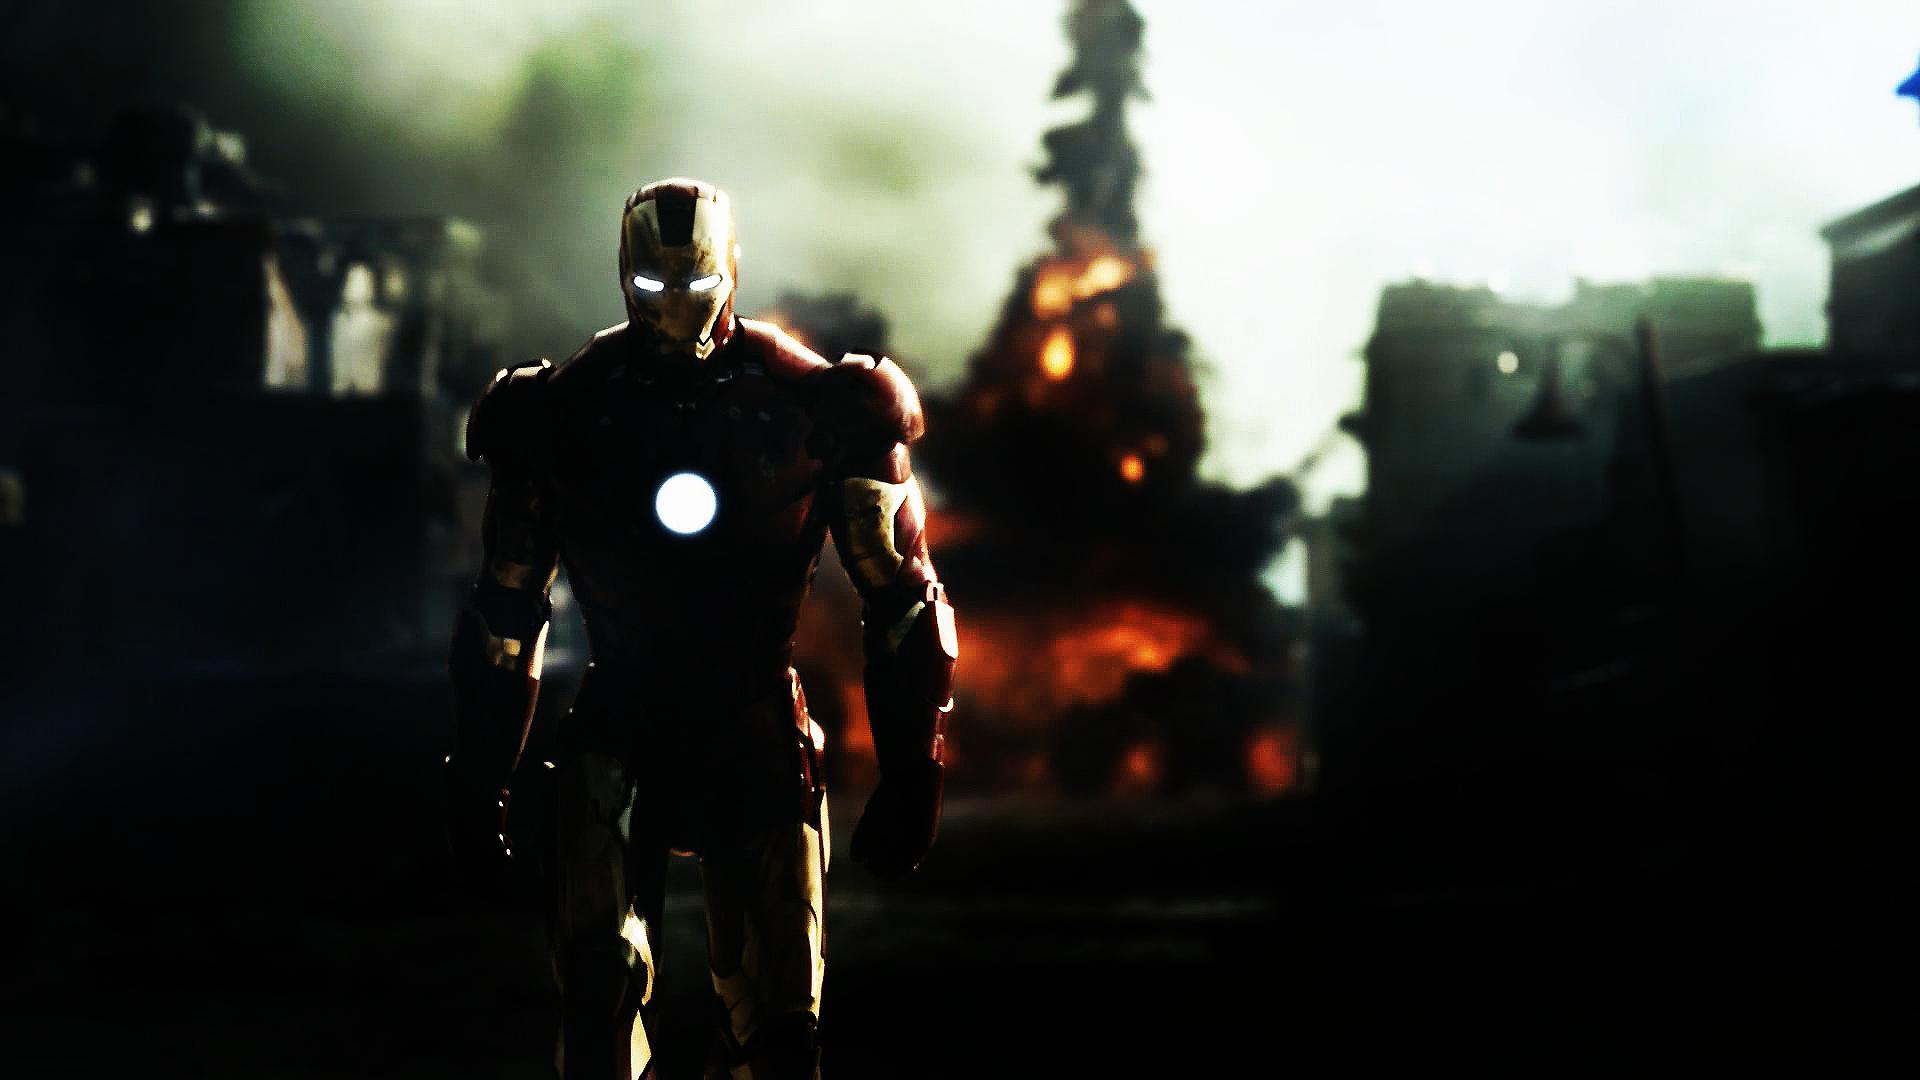 Tải miễn phí ảnh nền Iron Man HD với độ phân giải cao cho máy tính của bạn. Bộ sưu tập này bao gồm các hình ảnh chất lượng cao về siêu anh hùng Iron Man, làm nổi bật màn hình của bạn.